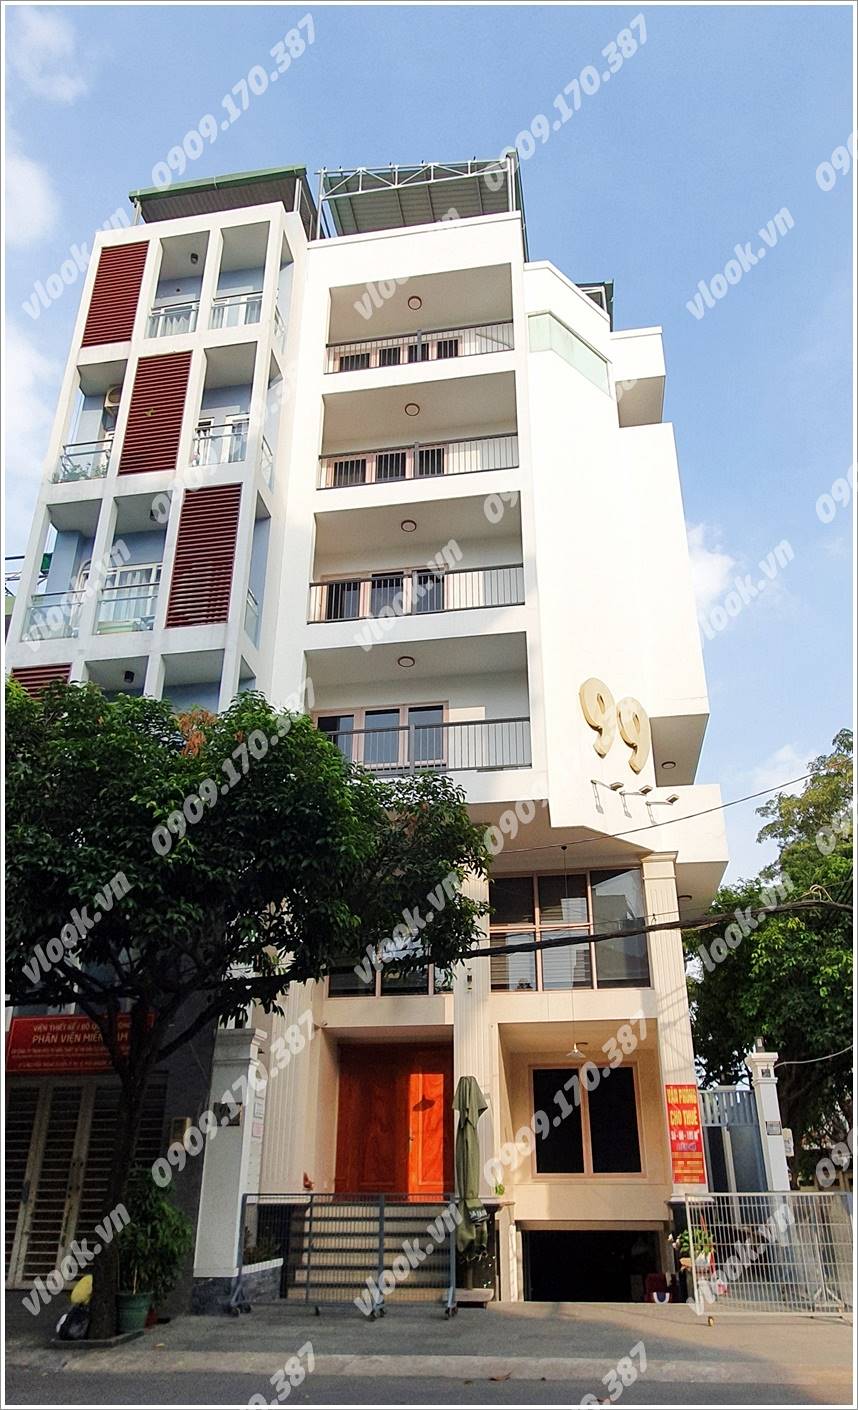 Cao ốc văn phòng cho thuê Tòa nhà Văn phòng C18 Building, Quận Tân Bình, TP.HCM - vlook.vn